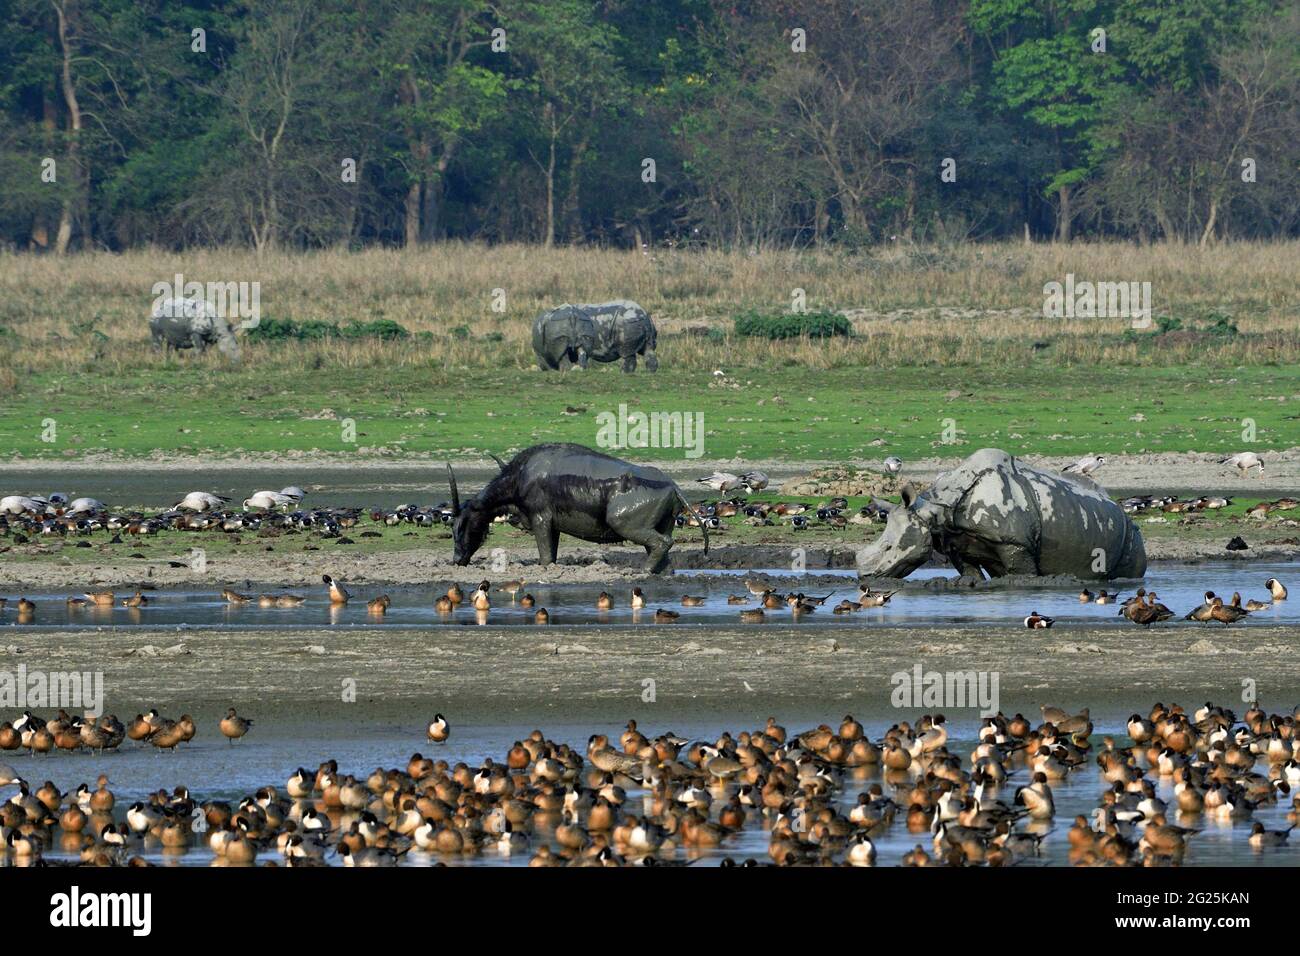 Vue sur le sanctuaire de la faune de Pobitora avec le Buffalo aquatique asiatique, le rhinocéros de Greater One Horned et différentes espèces d'oiseaux migrateurs Banque D'Images